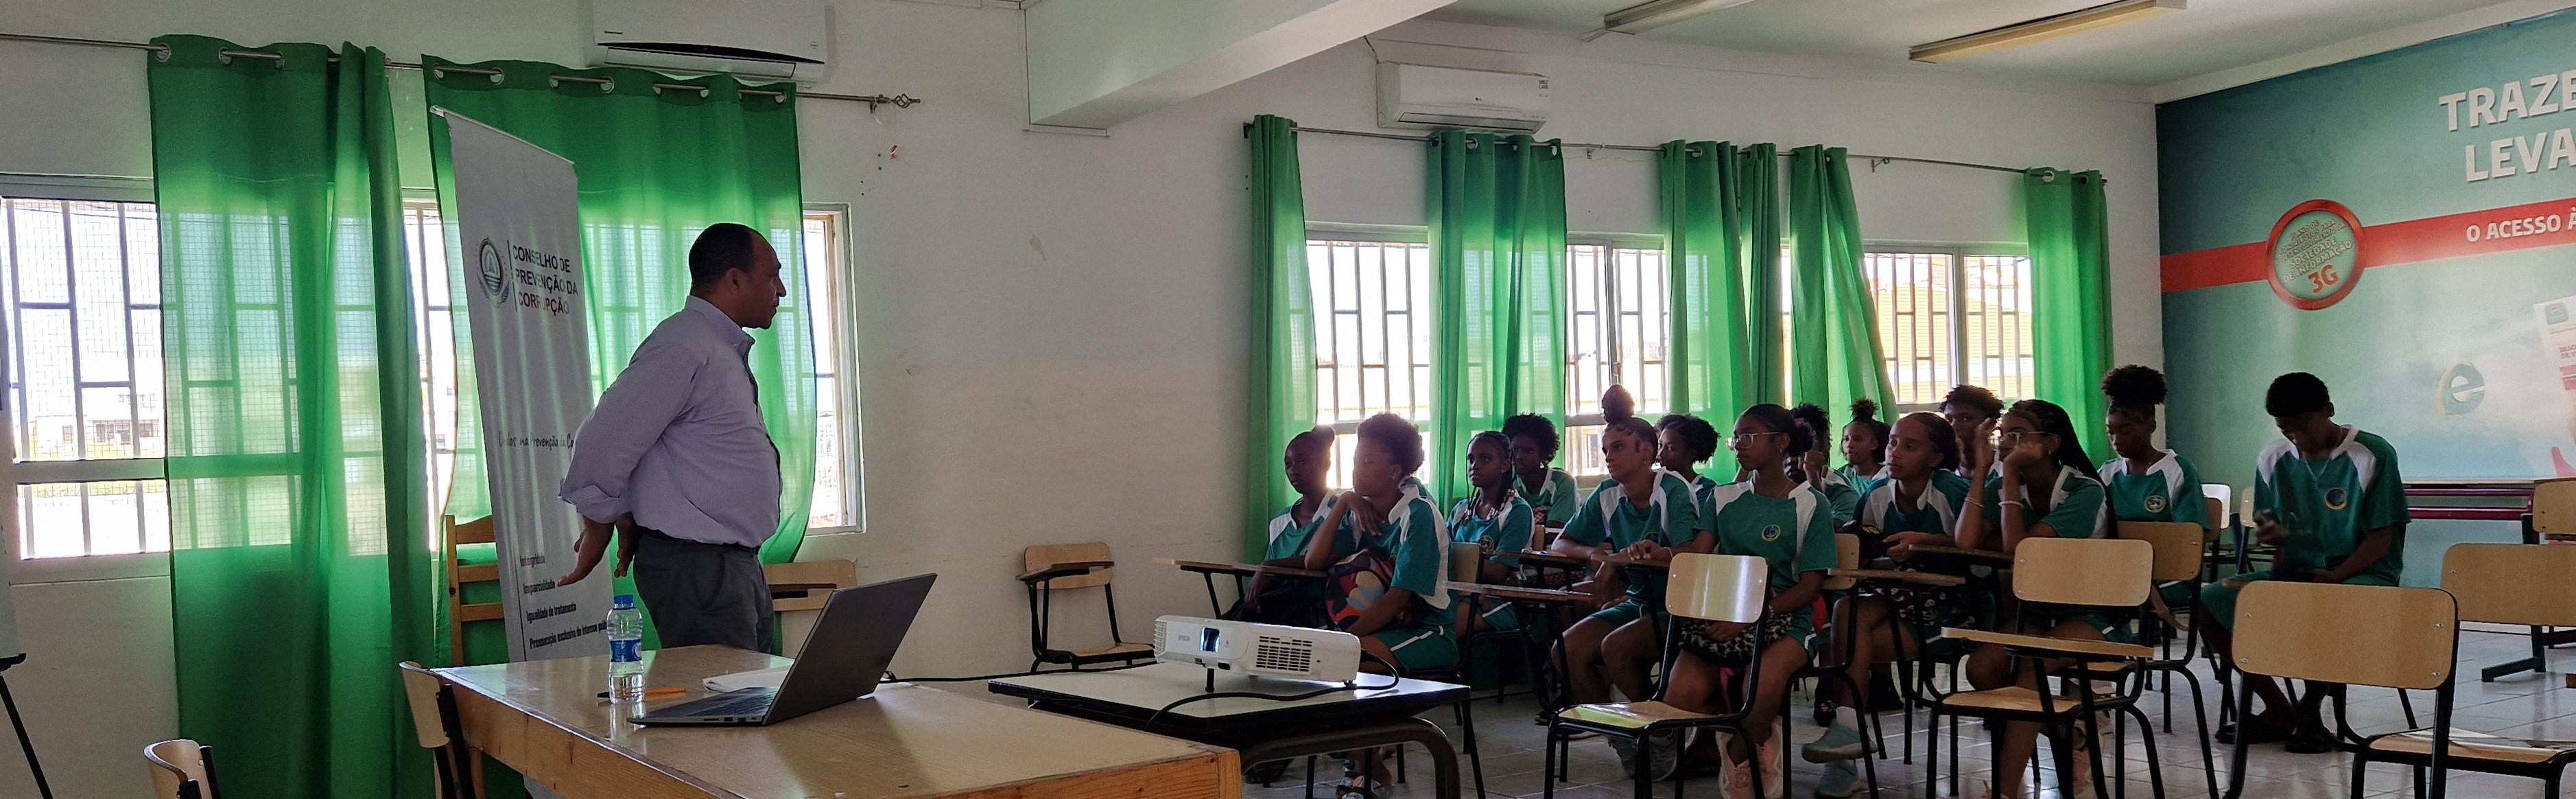 11ª Ação Pedagógica/Educativa na Escola Secundária Pedro Gomes